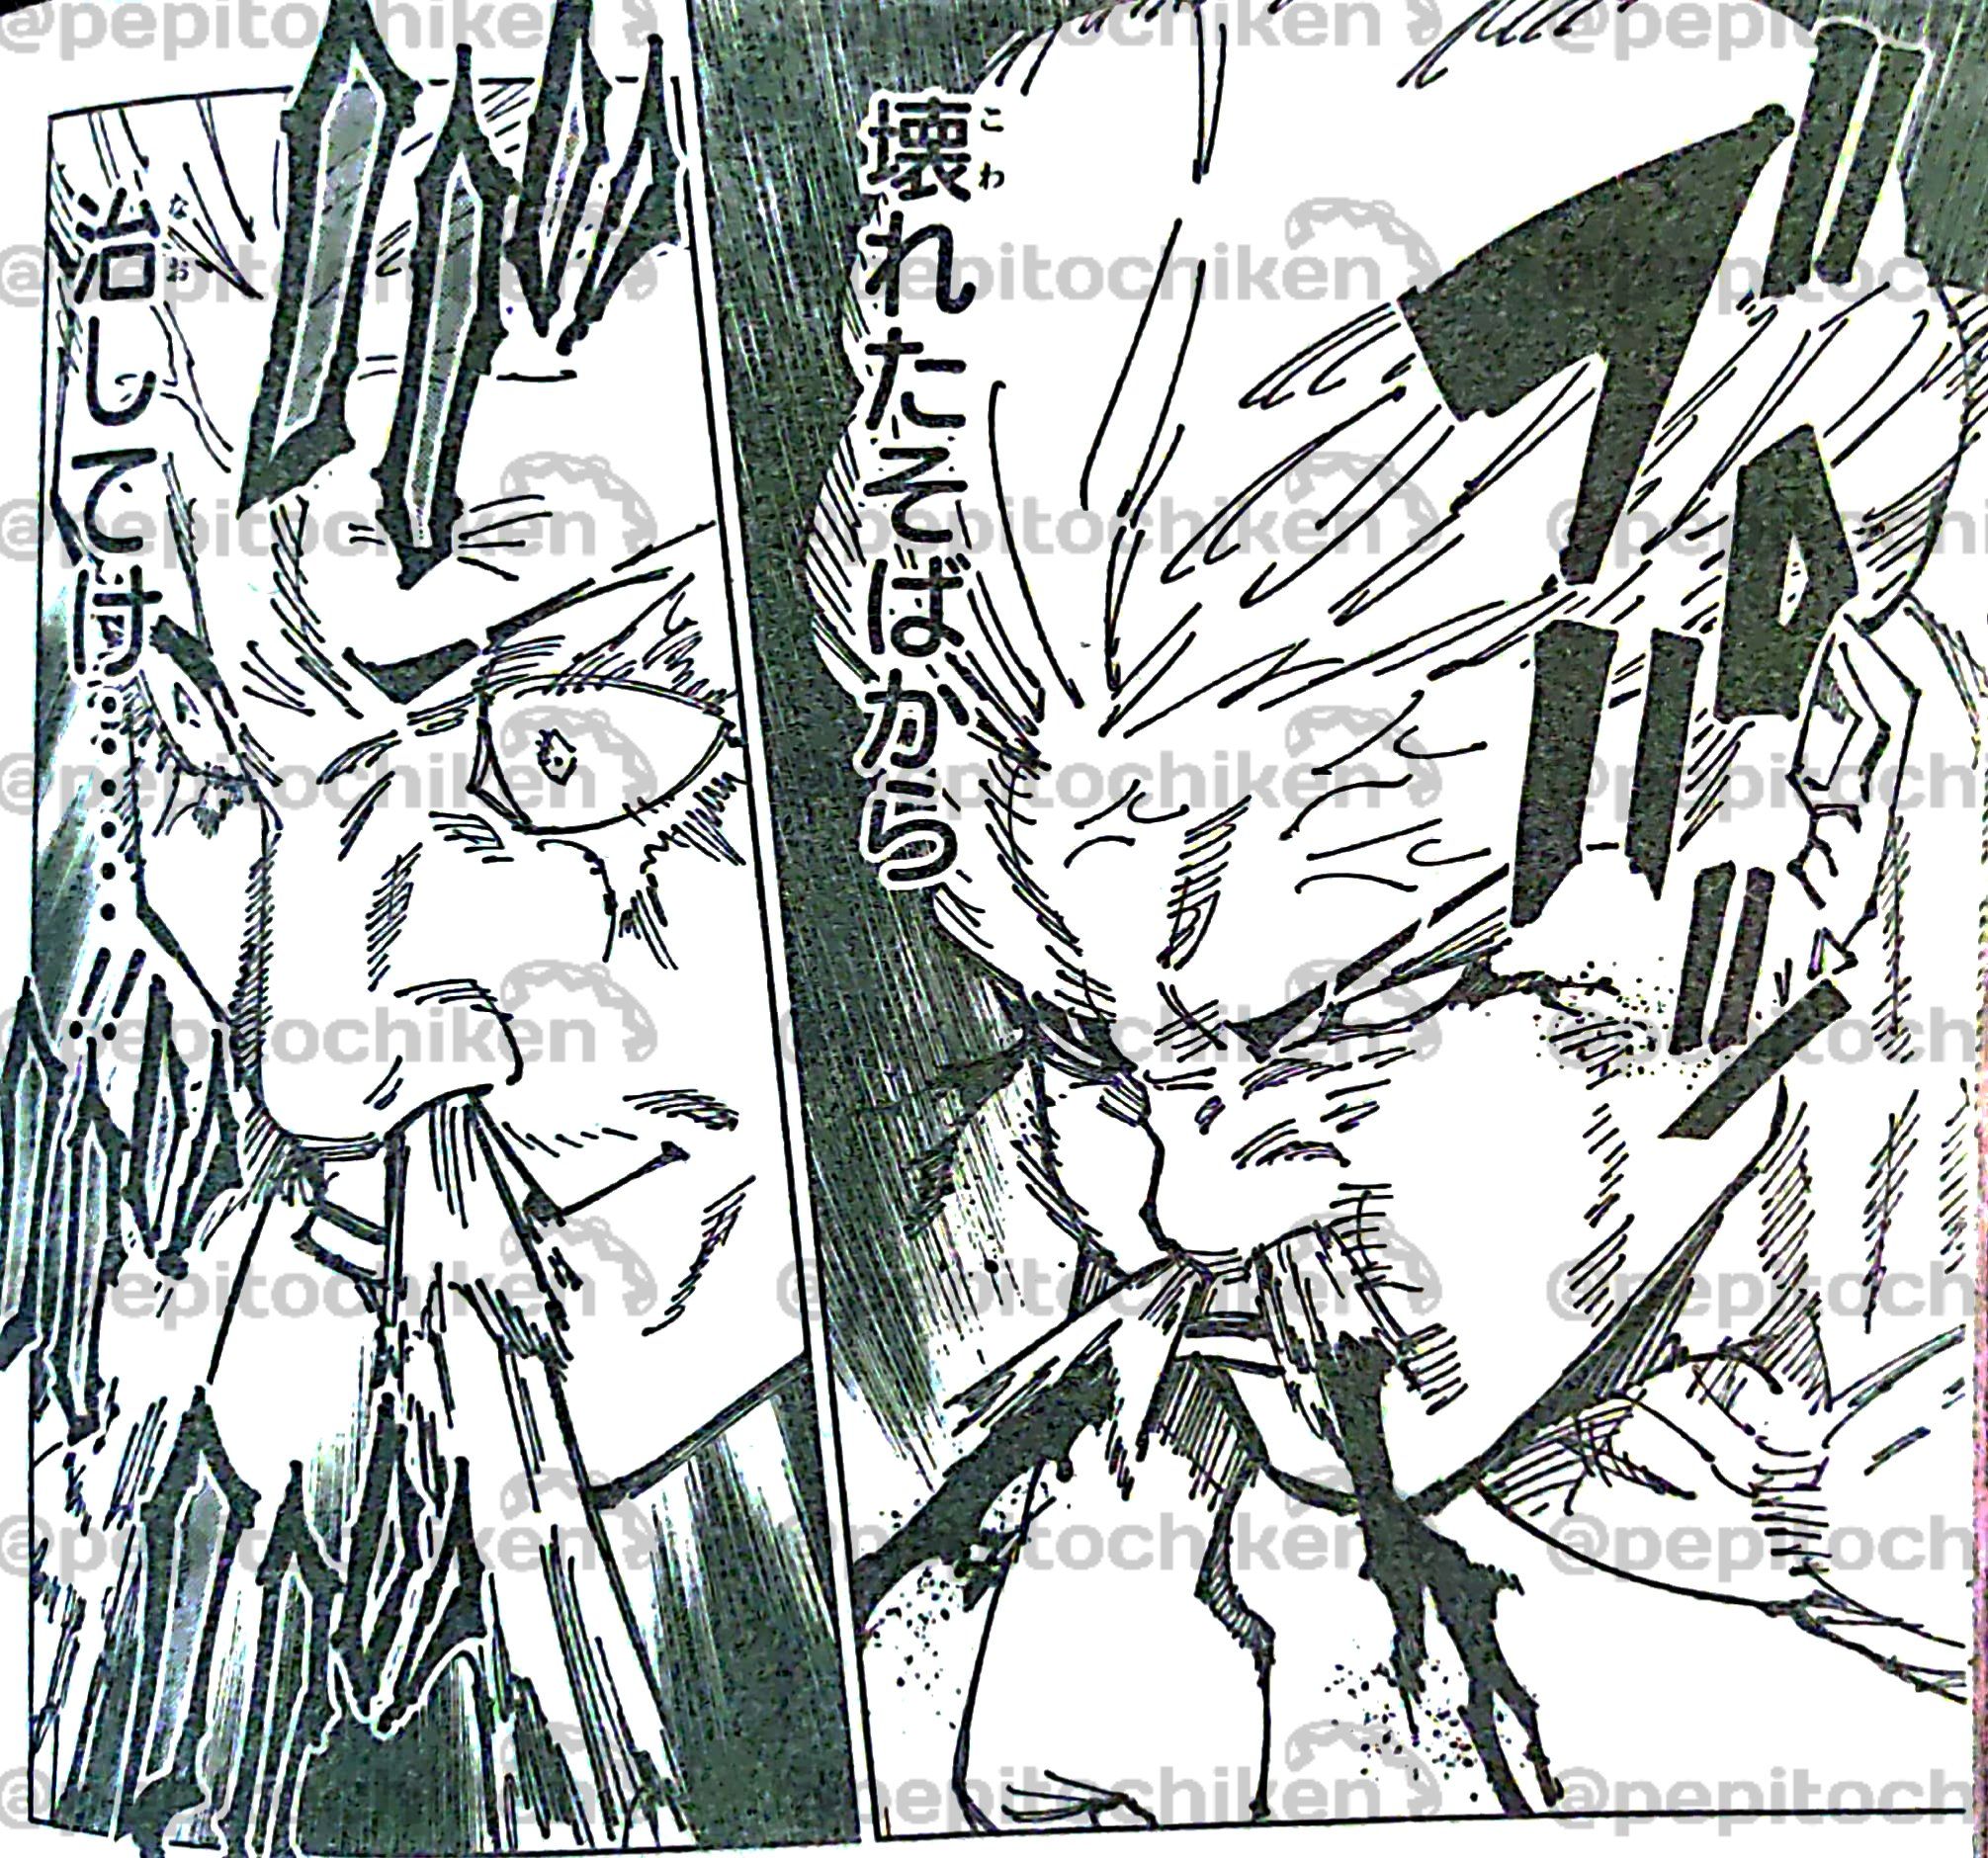 Kemampuan Penyembuhan yang Gila Panel kanan menunjukkan wajah Hakari berdarah & panel kiri menunjukkan dia langsung sembuh dari kerusakan.